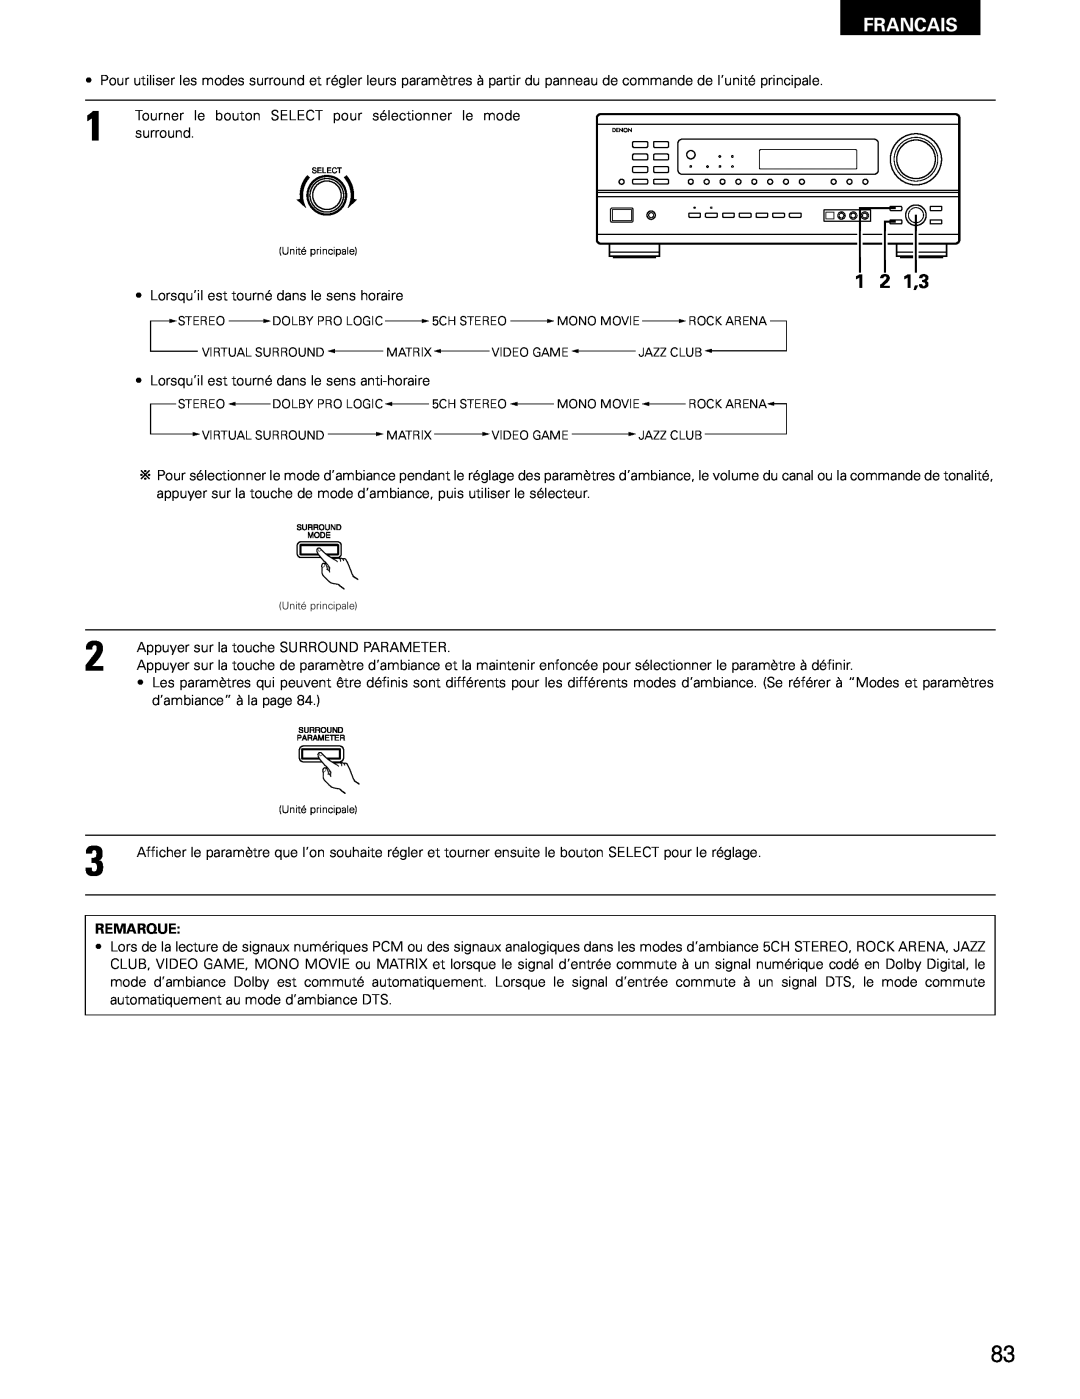 Denon AVR-1802/882 manual 1 2 1,3, Francais, Tourner le bouton SELECT pour sélectionner le mode, Remarque 